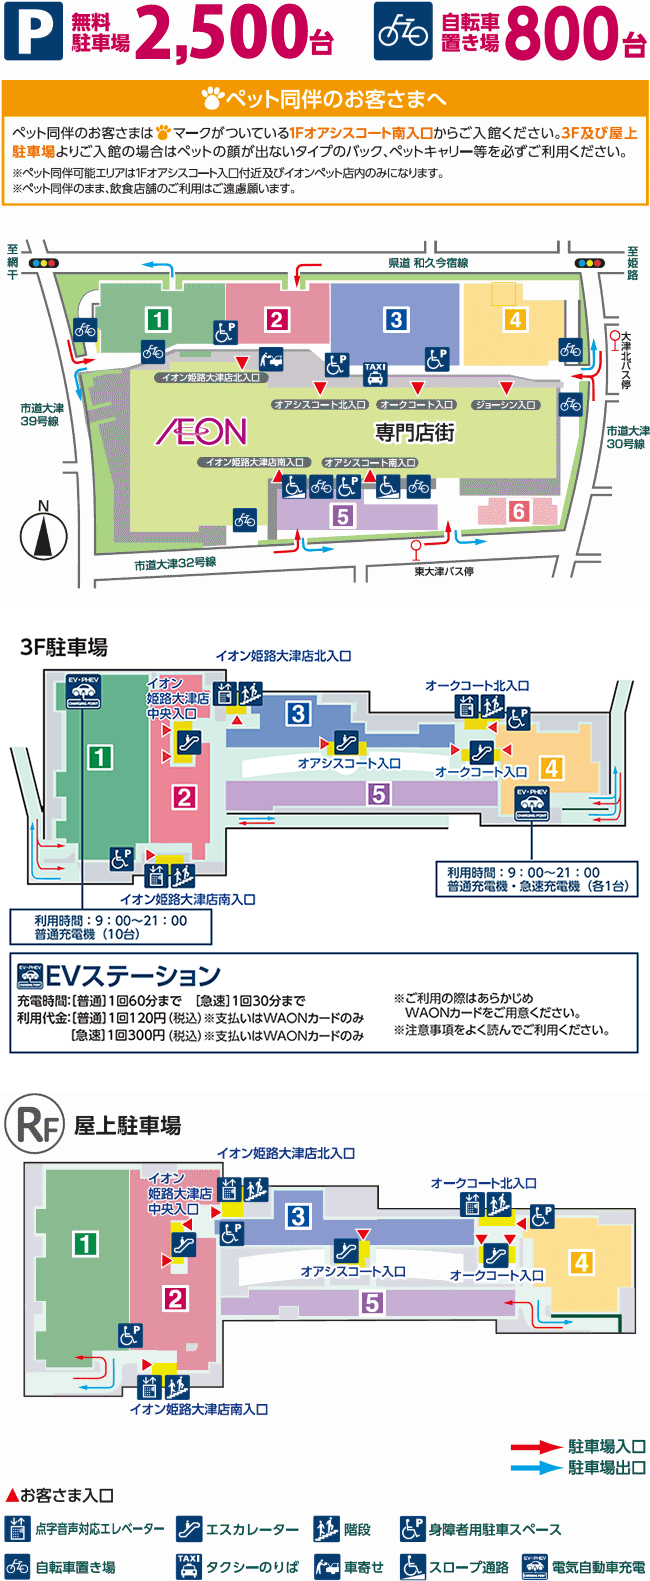 アクセスガイド - イオンモール姫路大津 公式ホームページ